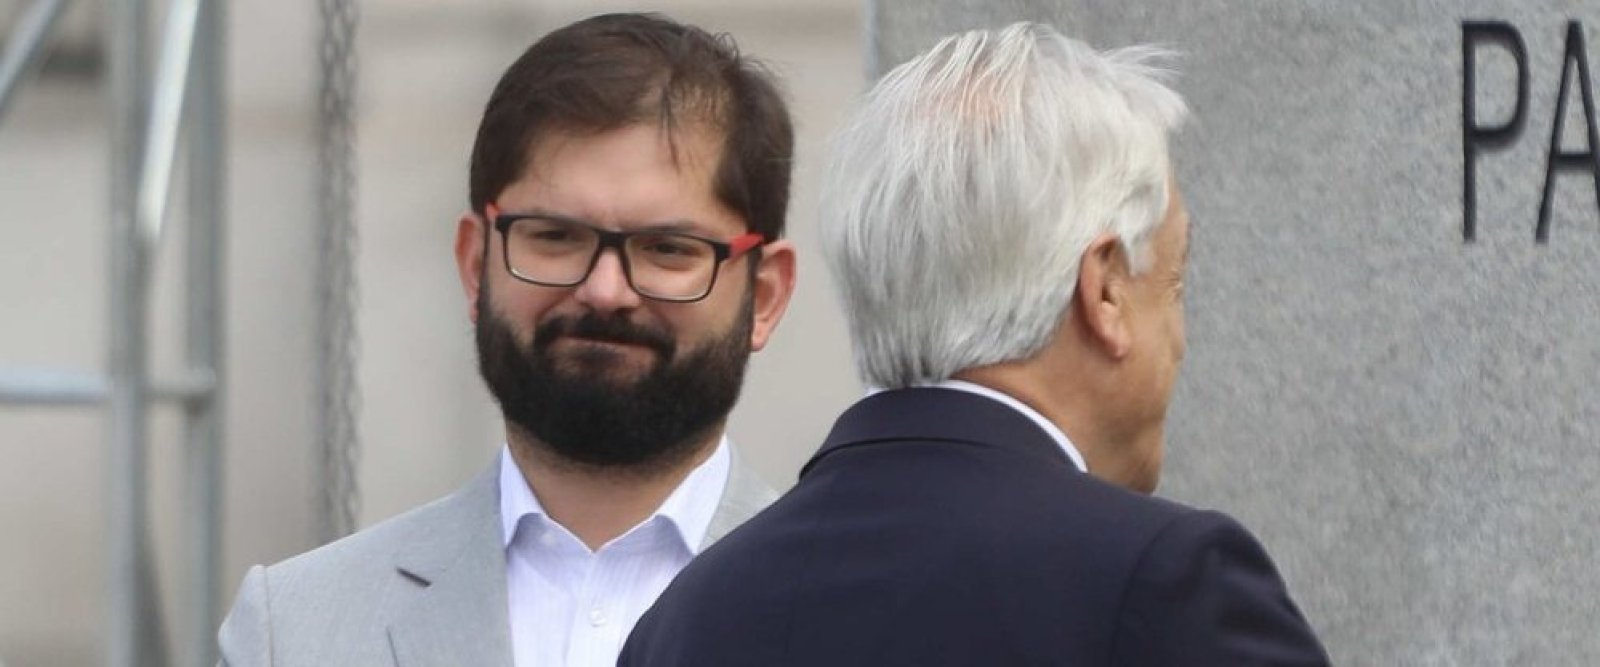 Pdte. Boric responde a Piñera: “No hay que confundir actos violentos con movilizaciones”